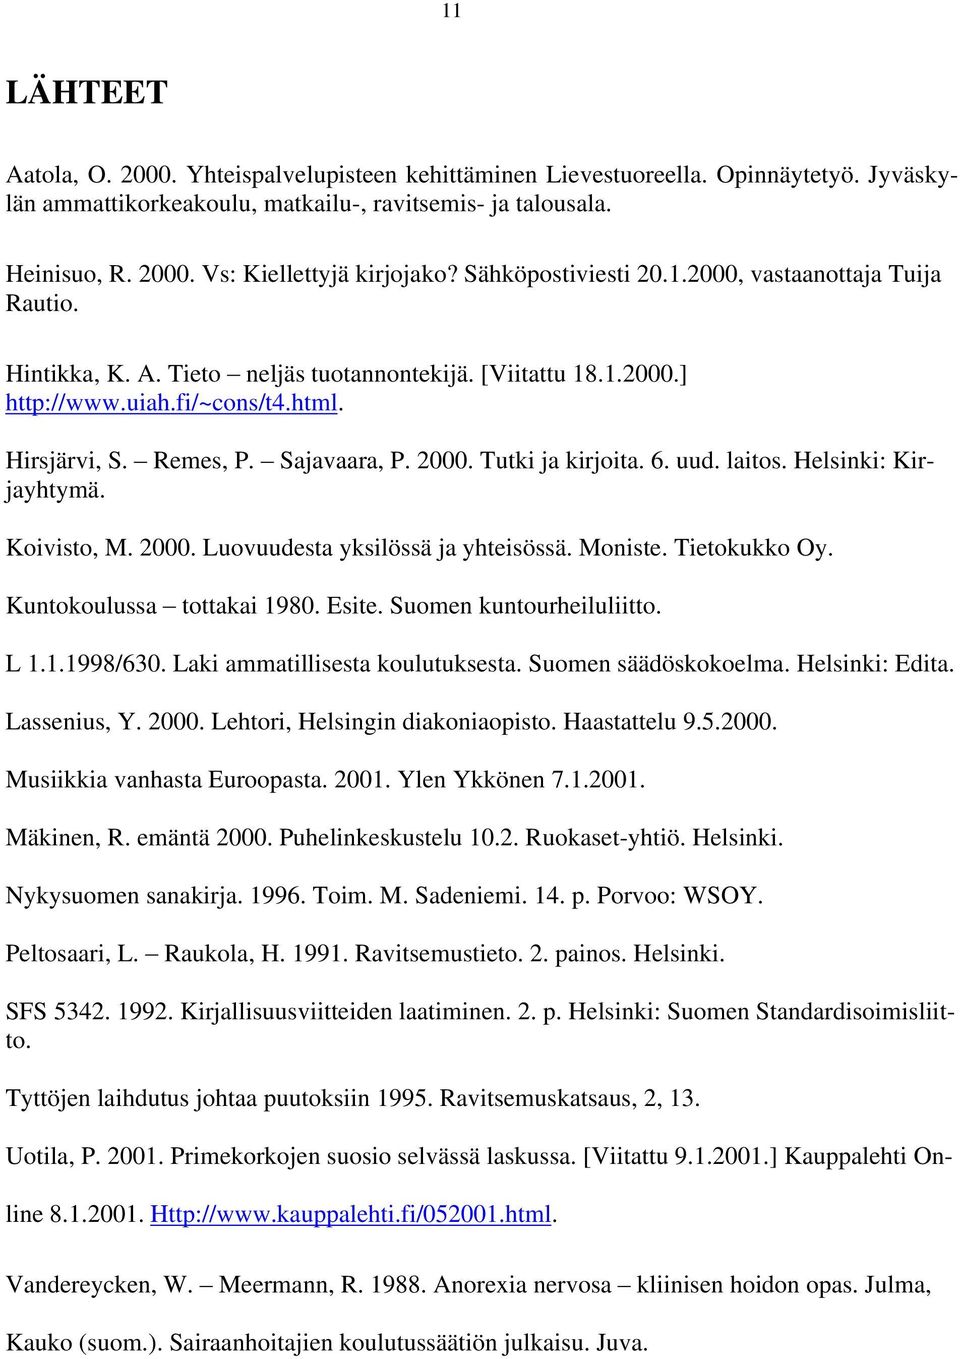 uud. laitos. Helsinki: Kir- Hirsjärvi, S. Remes, P. jayhtymä. Koivisto, M. 2000. Luovuudesta yksilössä ja yhteisössä. Moniste. Tietokukko Oy. Kuntokoulussa tottakai 1980. Esite.